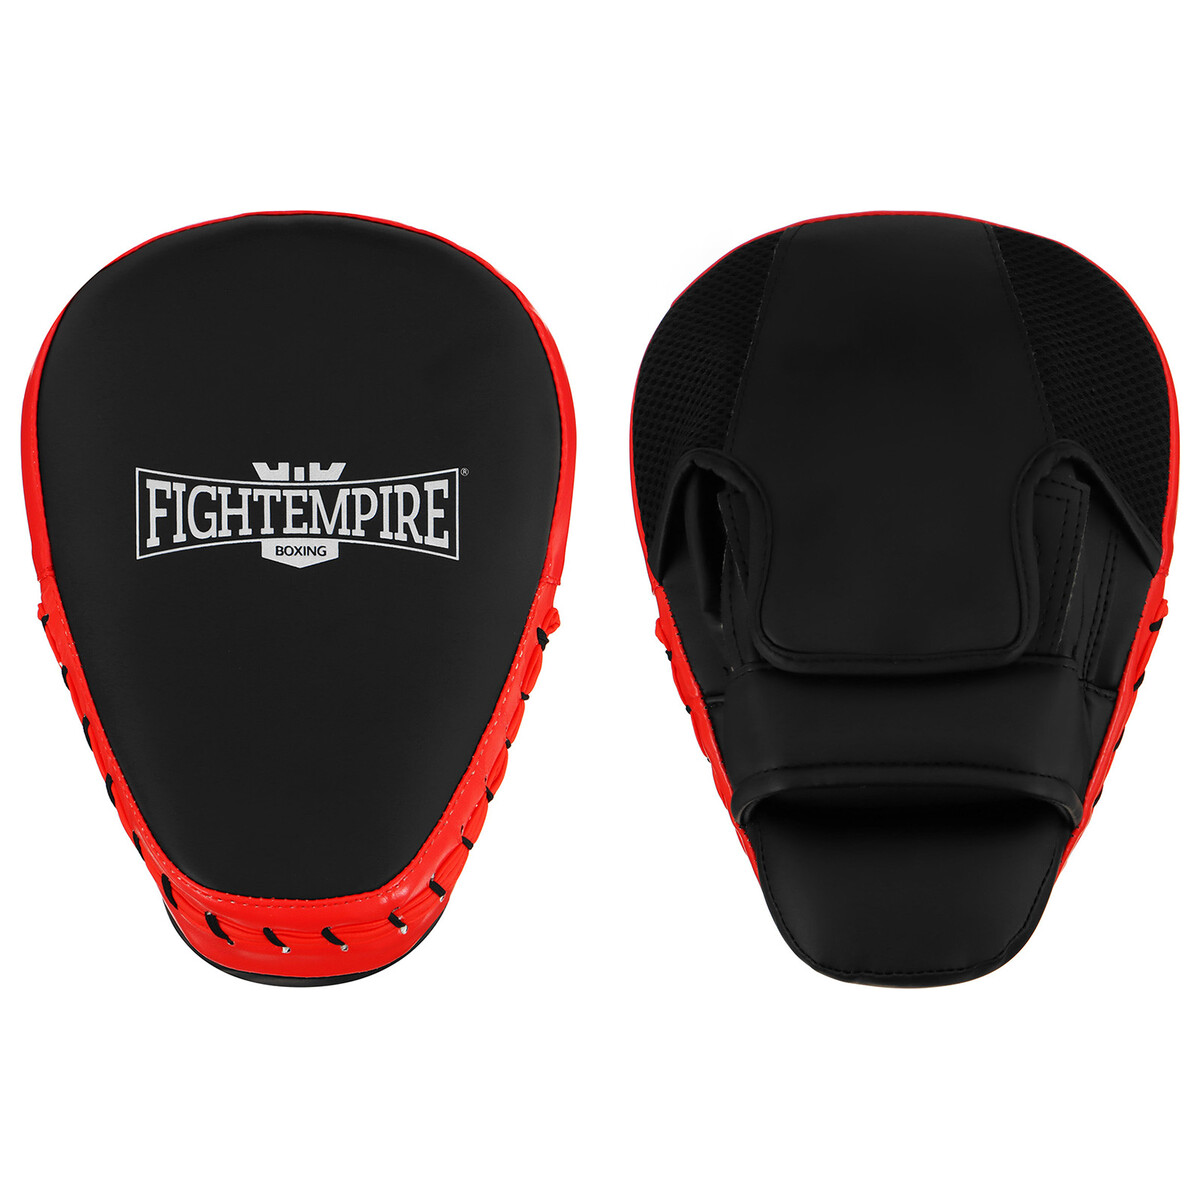 Лапа боксерская fight empire pro, 1 шт., цвет черный/красный украшение на зеркало боксерская перчатка 9×5 см